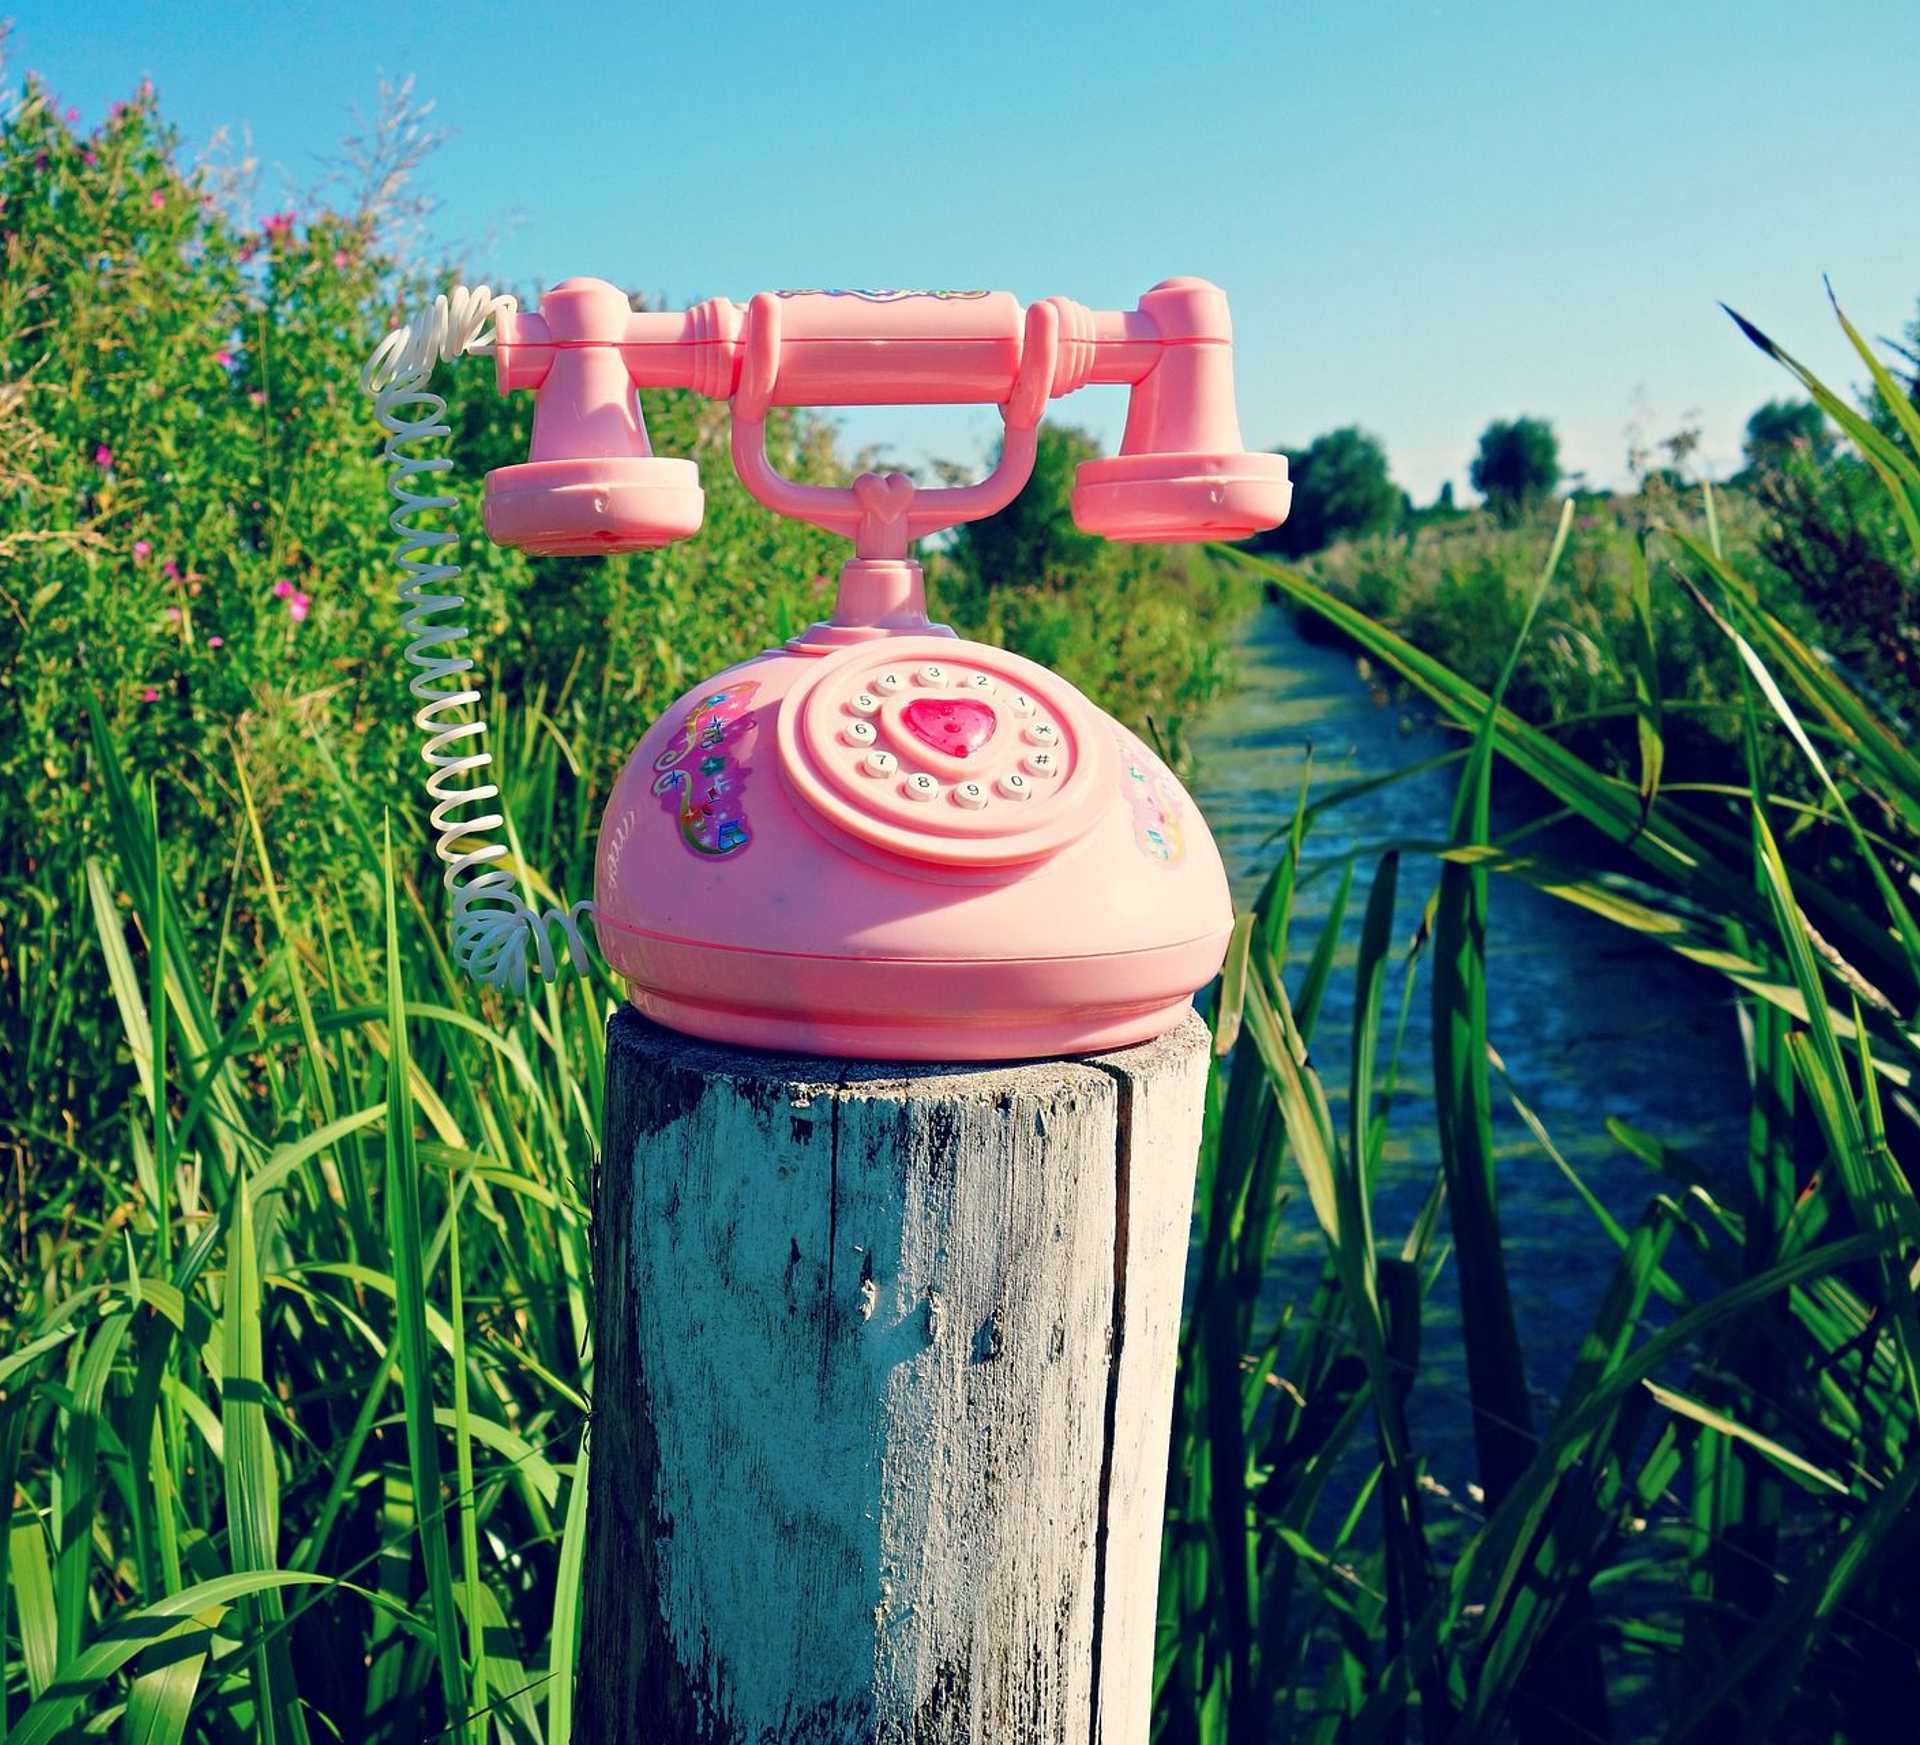 Ein pinkes Telefon auf einem Holzpfahl in einer grünen Schilflandschaft. Dahinter sieht man einen Fluss.